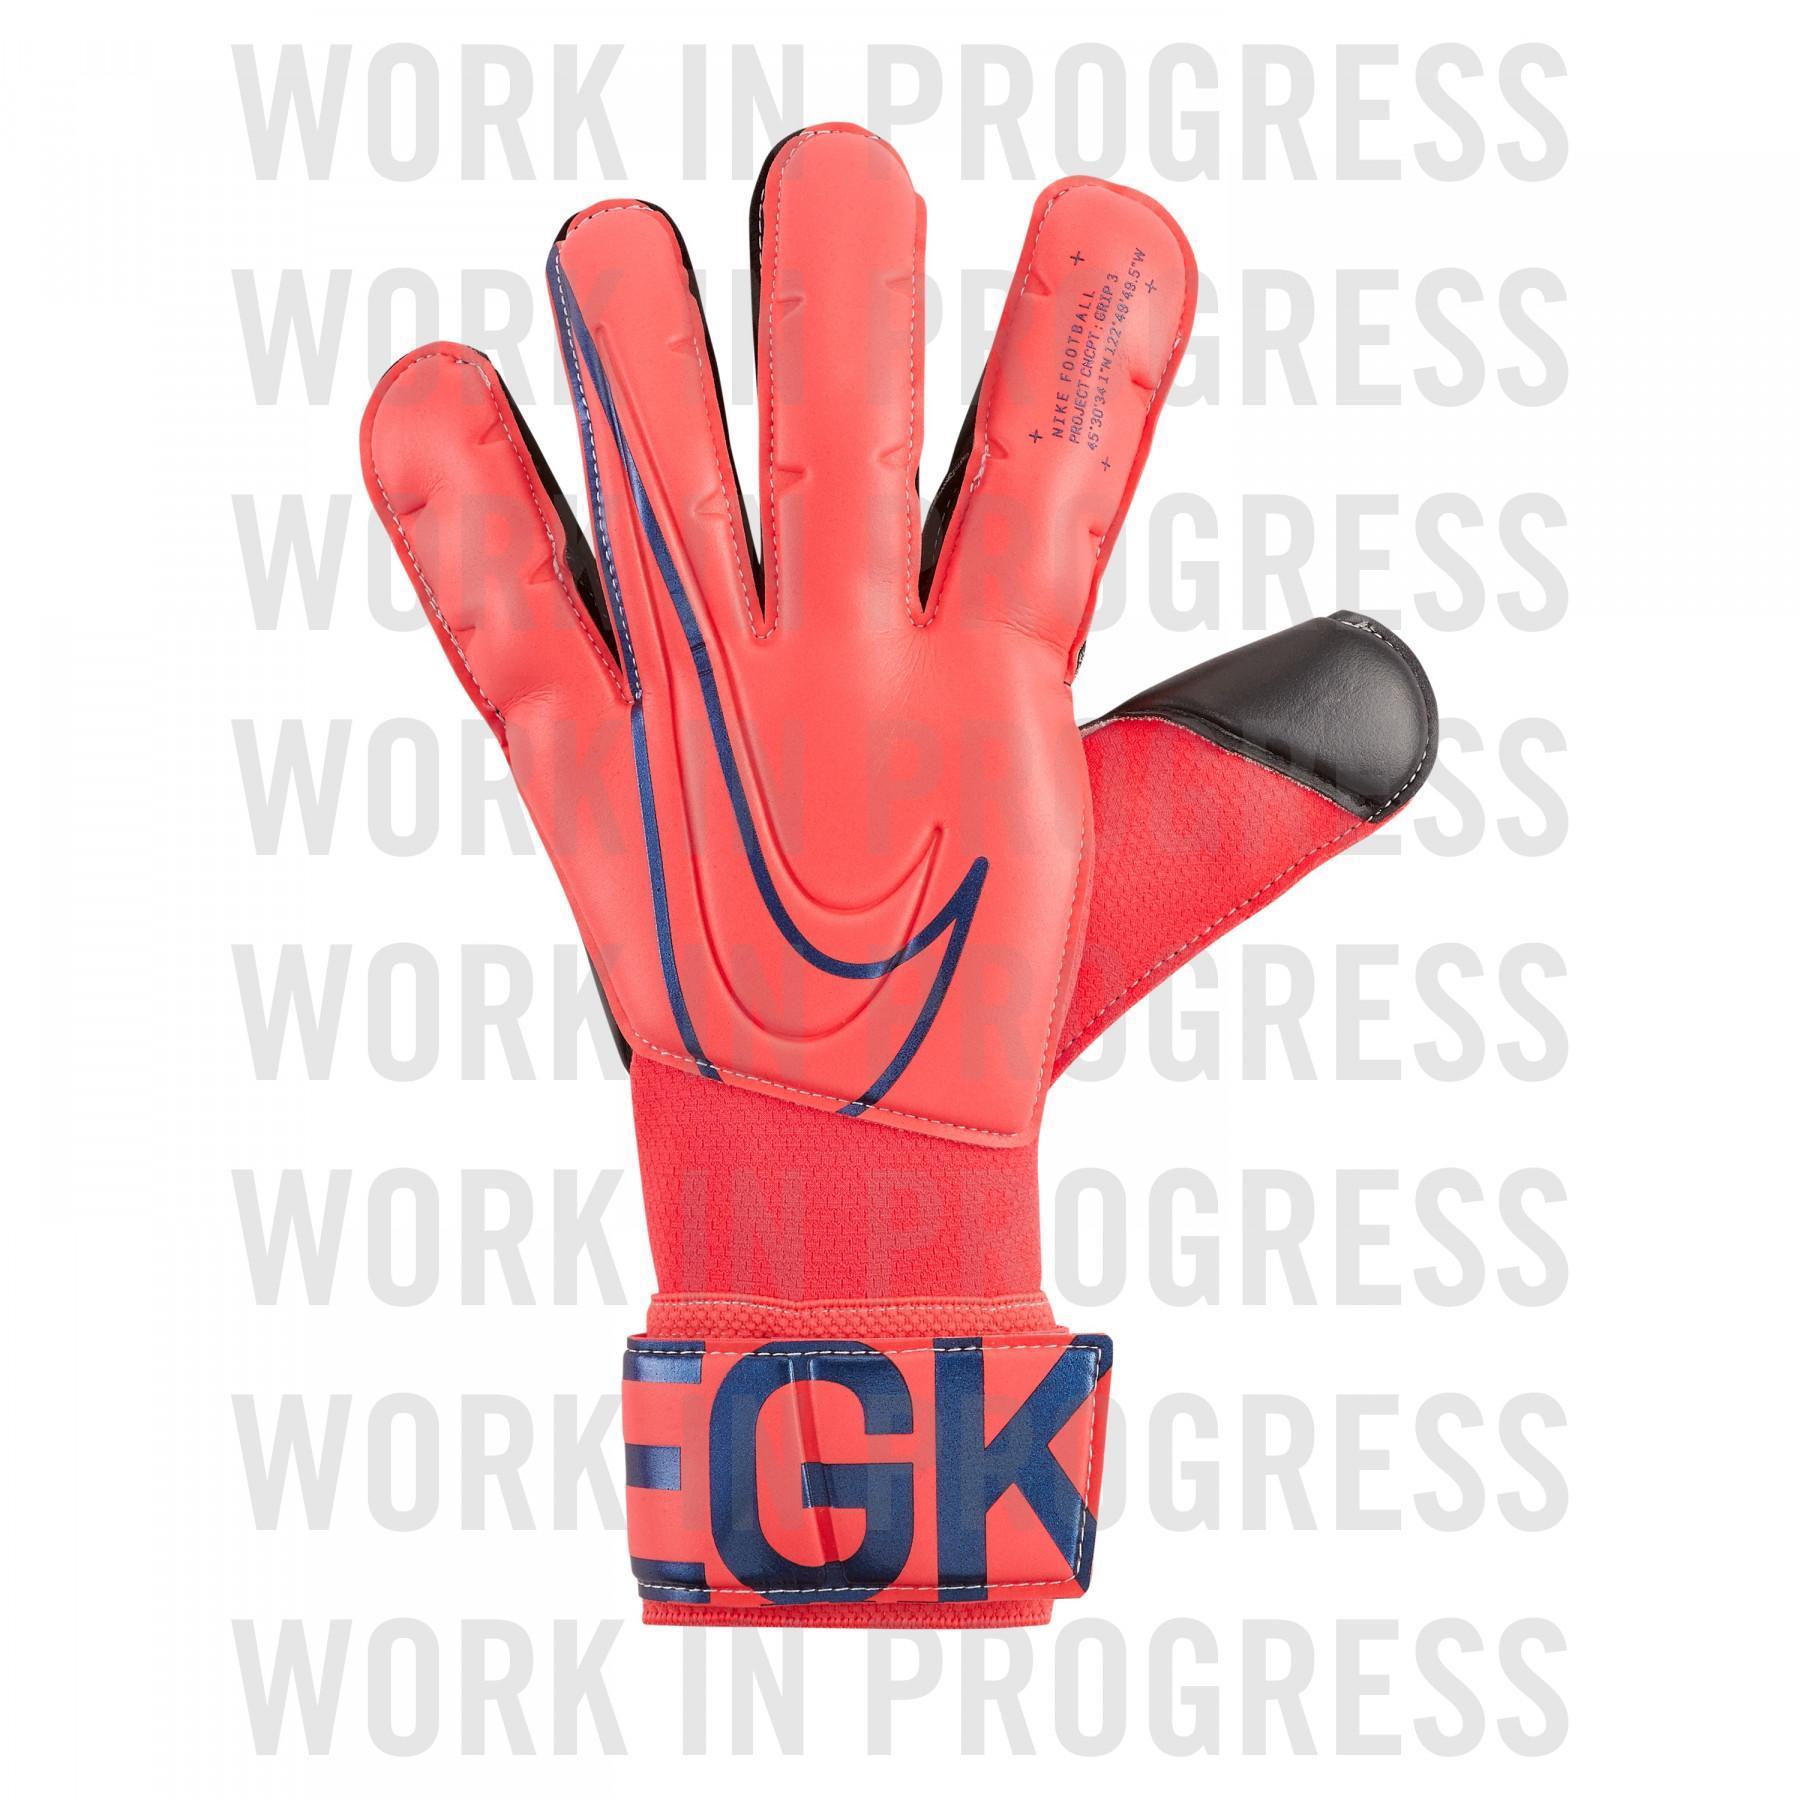 Rękawice bramkarskie Nike Grip 3